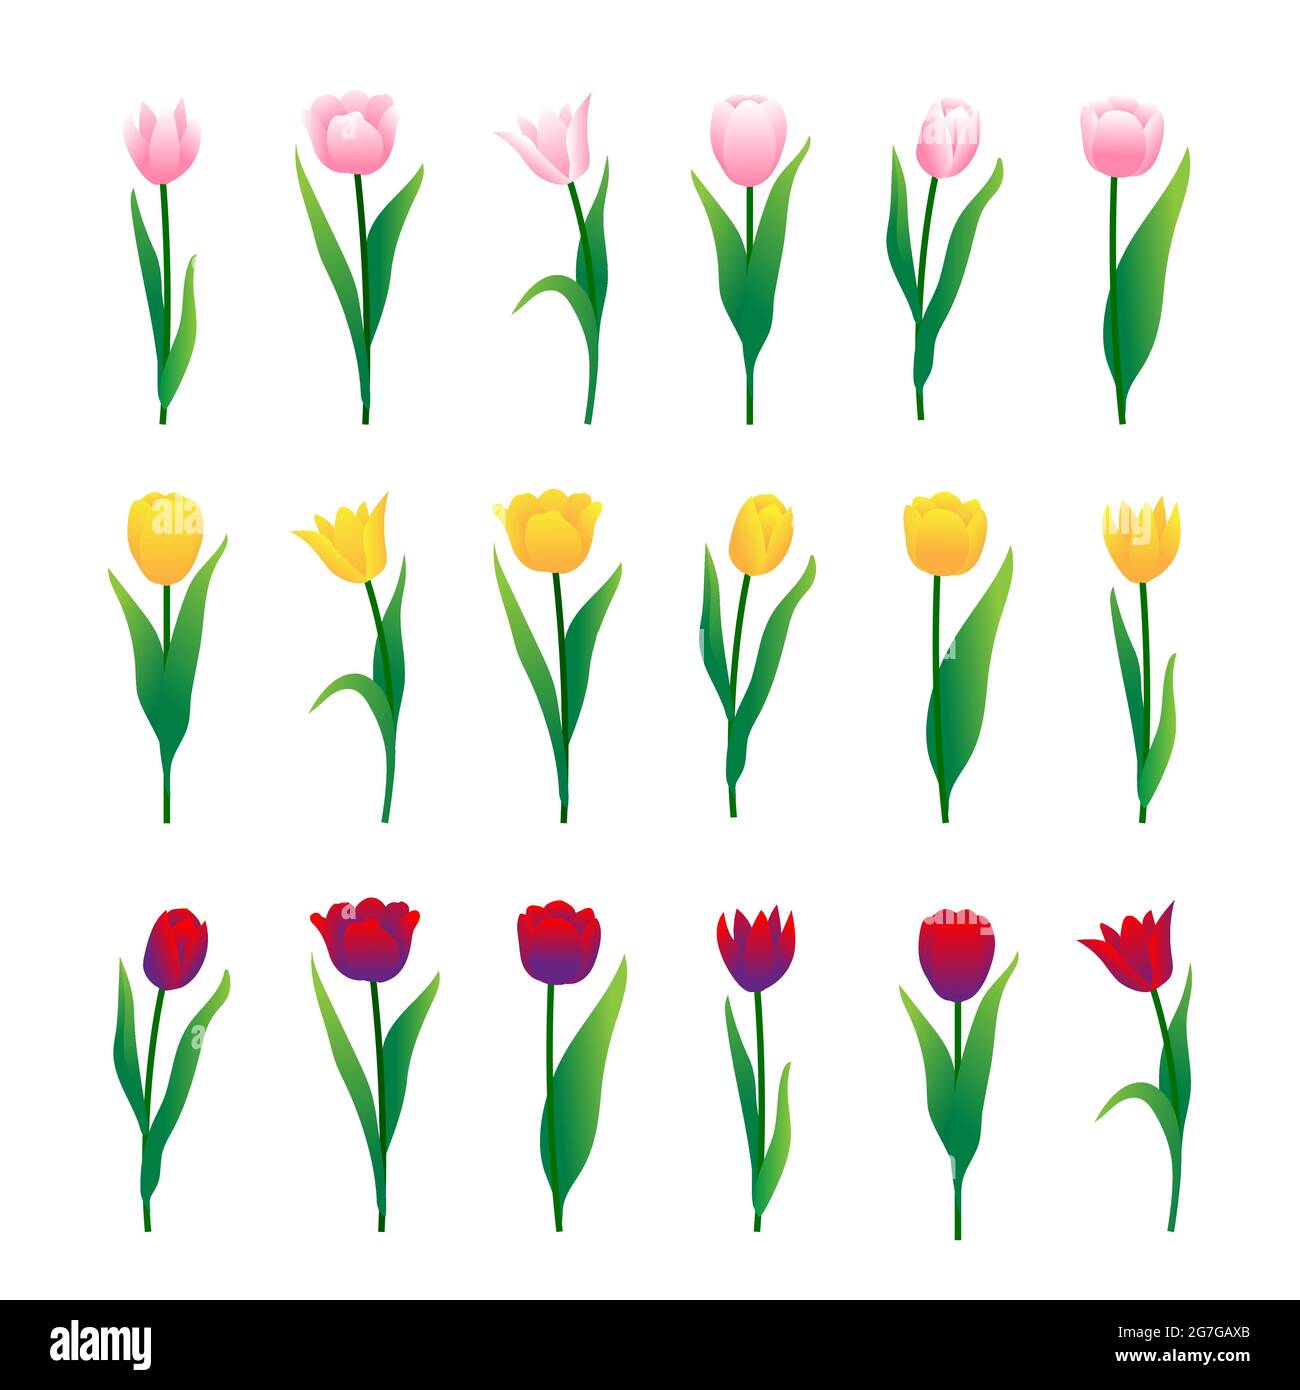 Bunte Tulpen auf weißem Hintergrund isoliert. Vektorgrafiken Stock Vektor